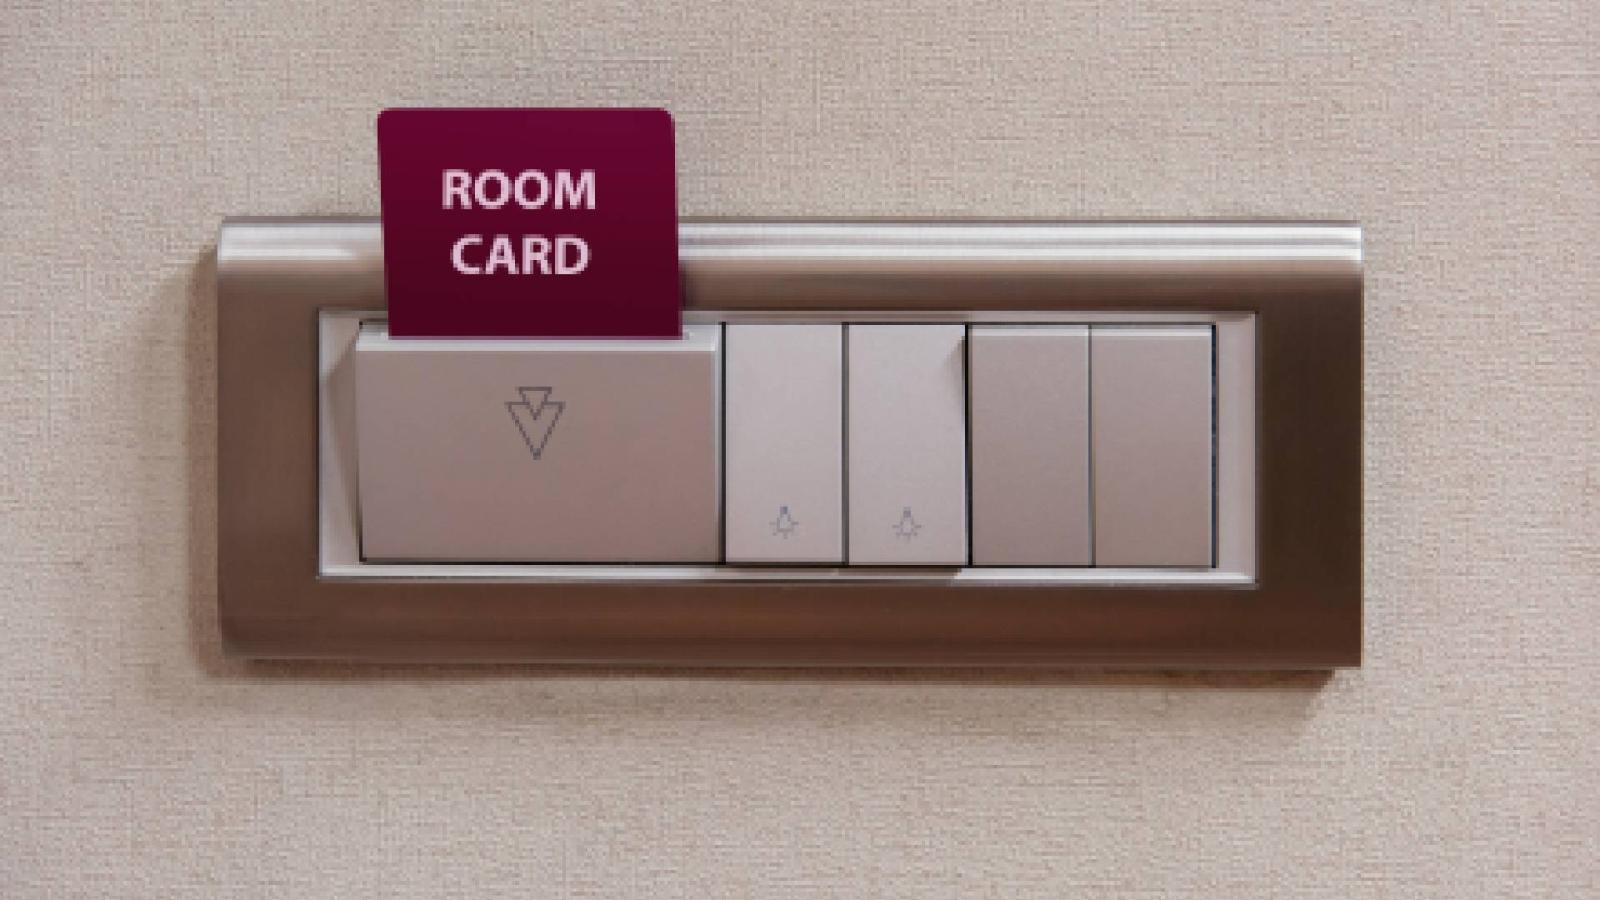 Вот как легко обойти карточную систему в отелях: опытные туристы знают простой способ - image 1